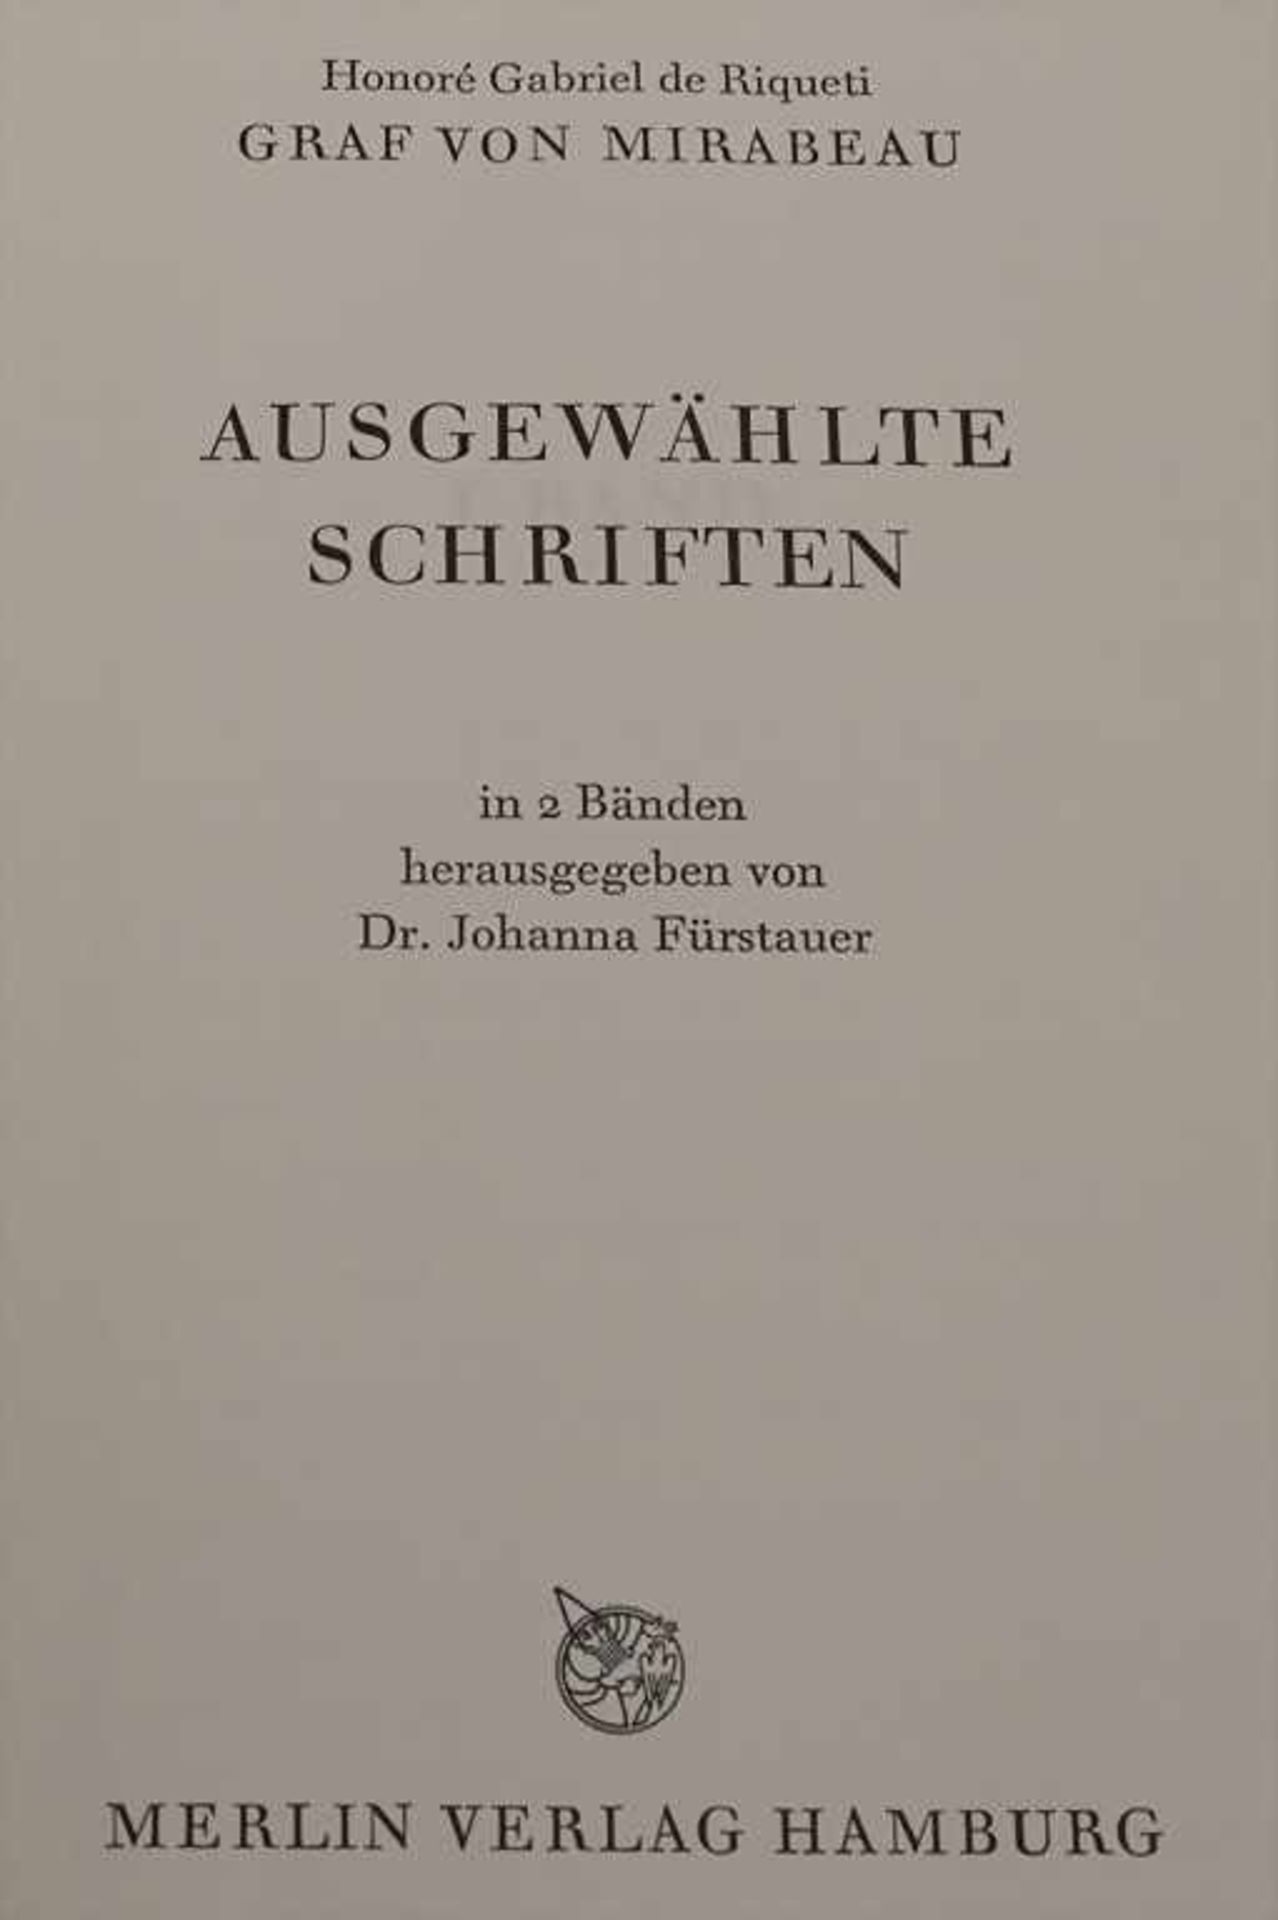 Graf von Mirabeau, Gabriel: Ausgewählte SchriftenTitel: Ausgewählte Schriften,Umfang: 2 Bde., - Image 3 of 9